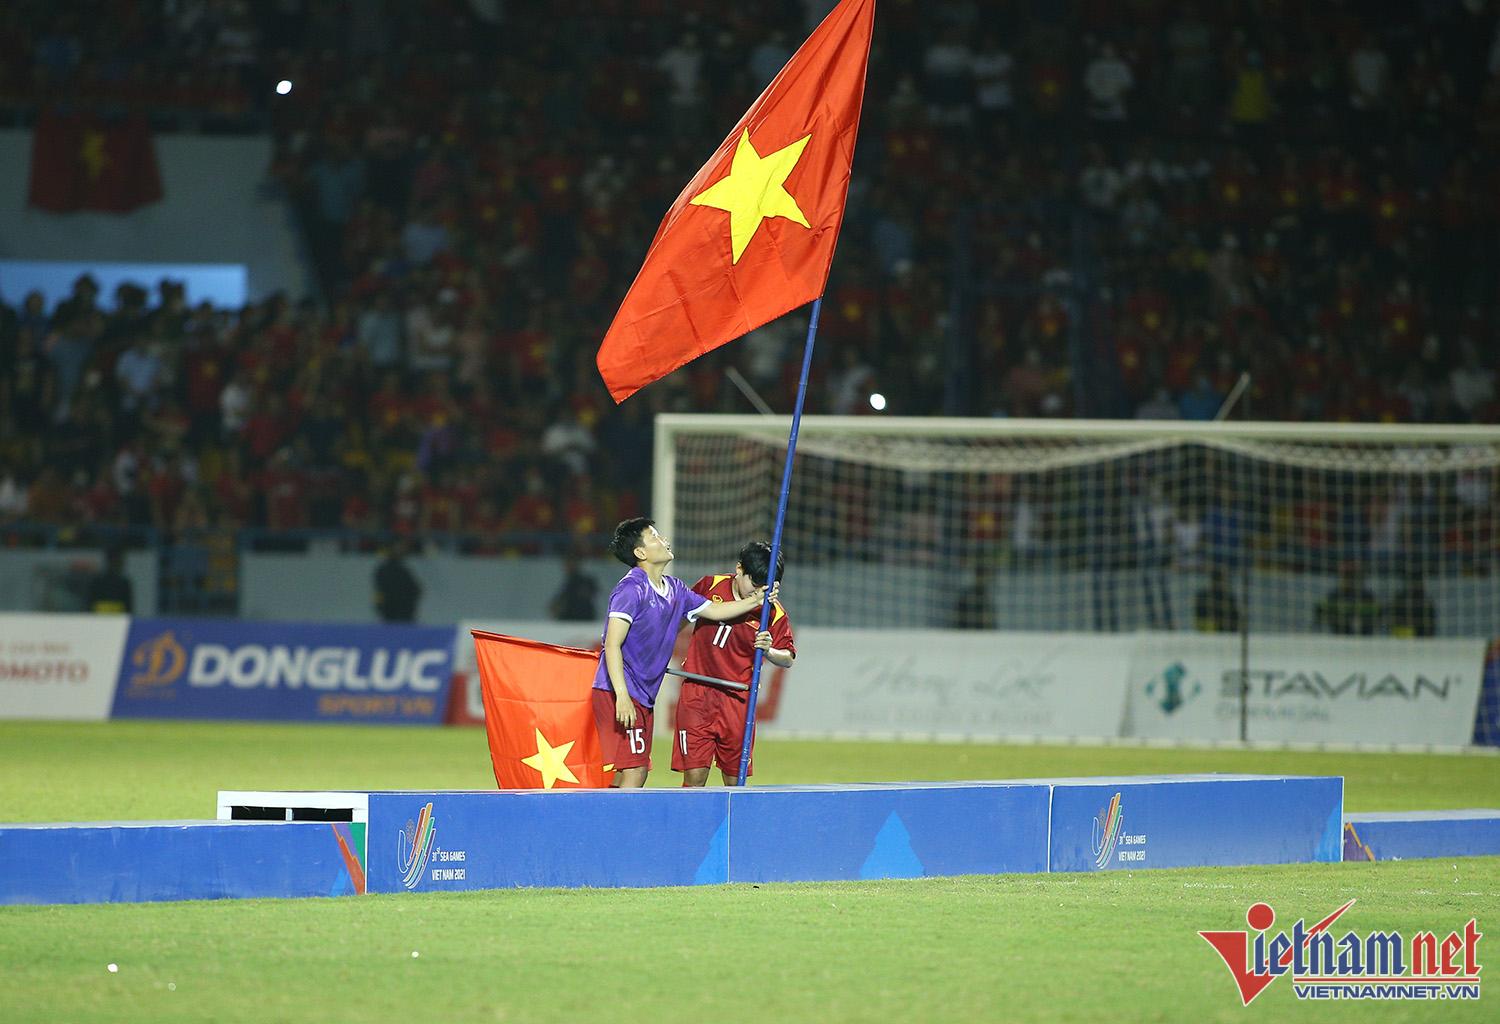 Xúc động hình ảnh cầu thủ nữ Việt Nam cắm cờ Tổ quốc trên bục nhận huy chương - Ảnh 8.